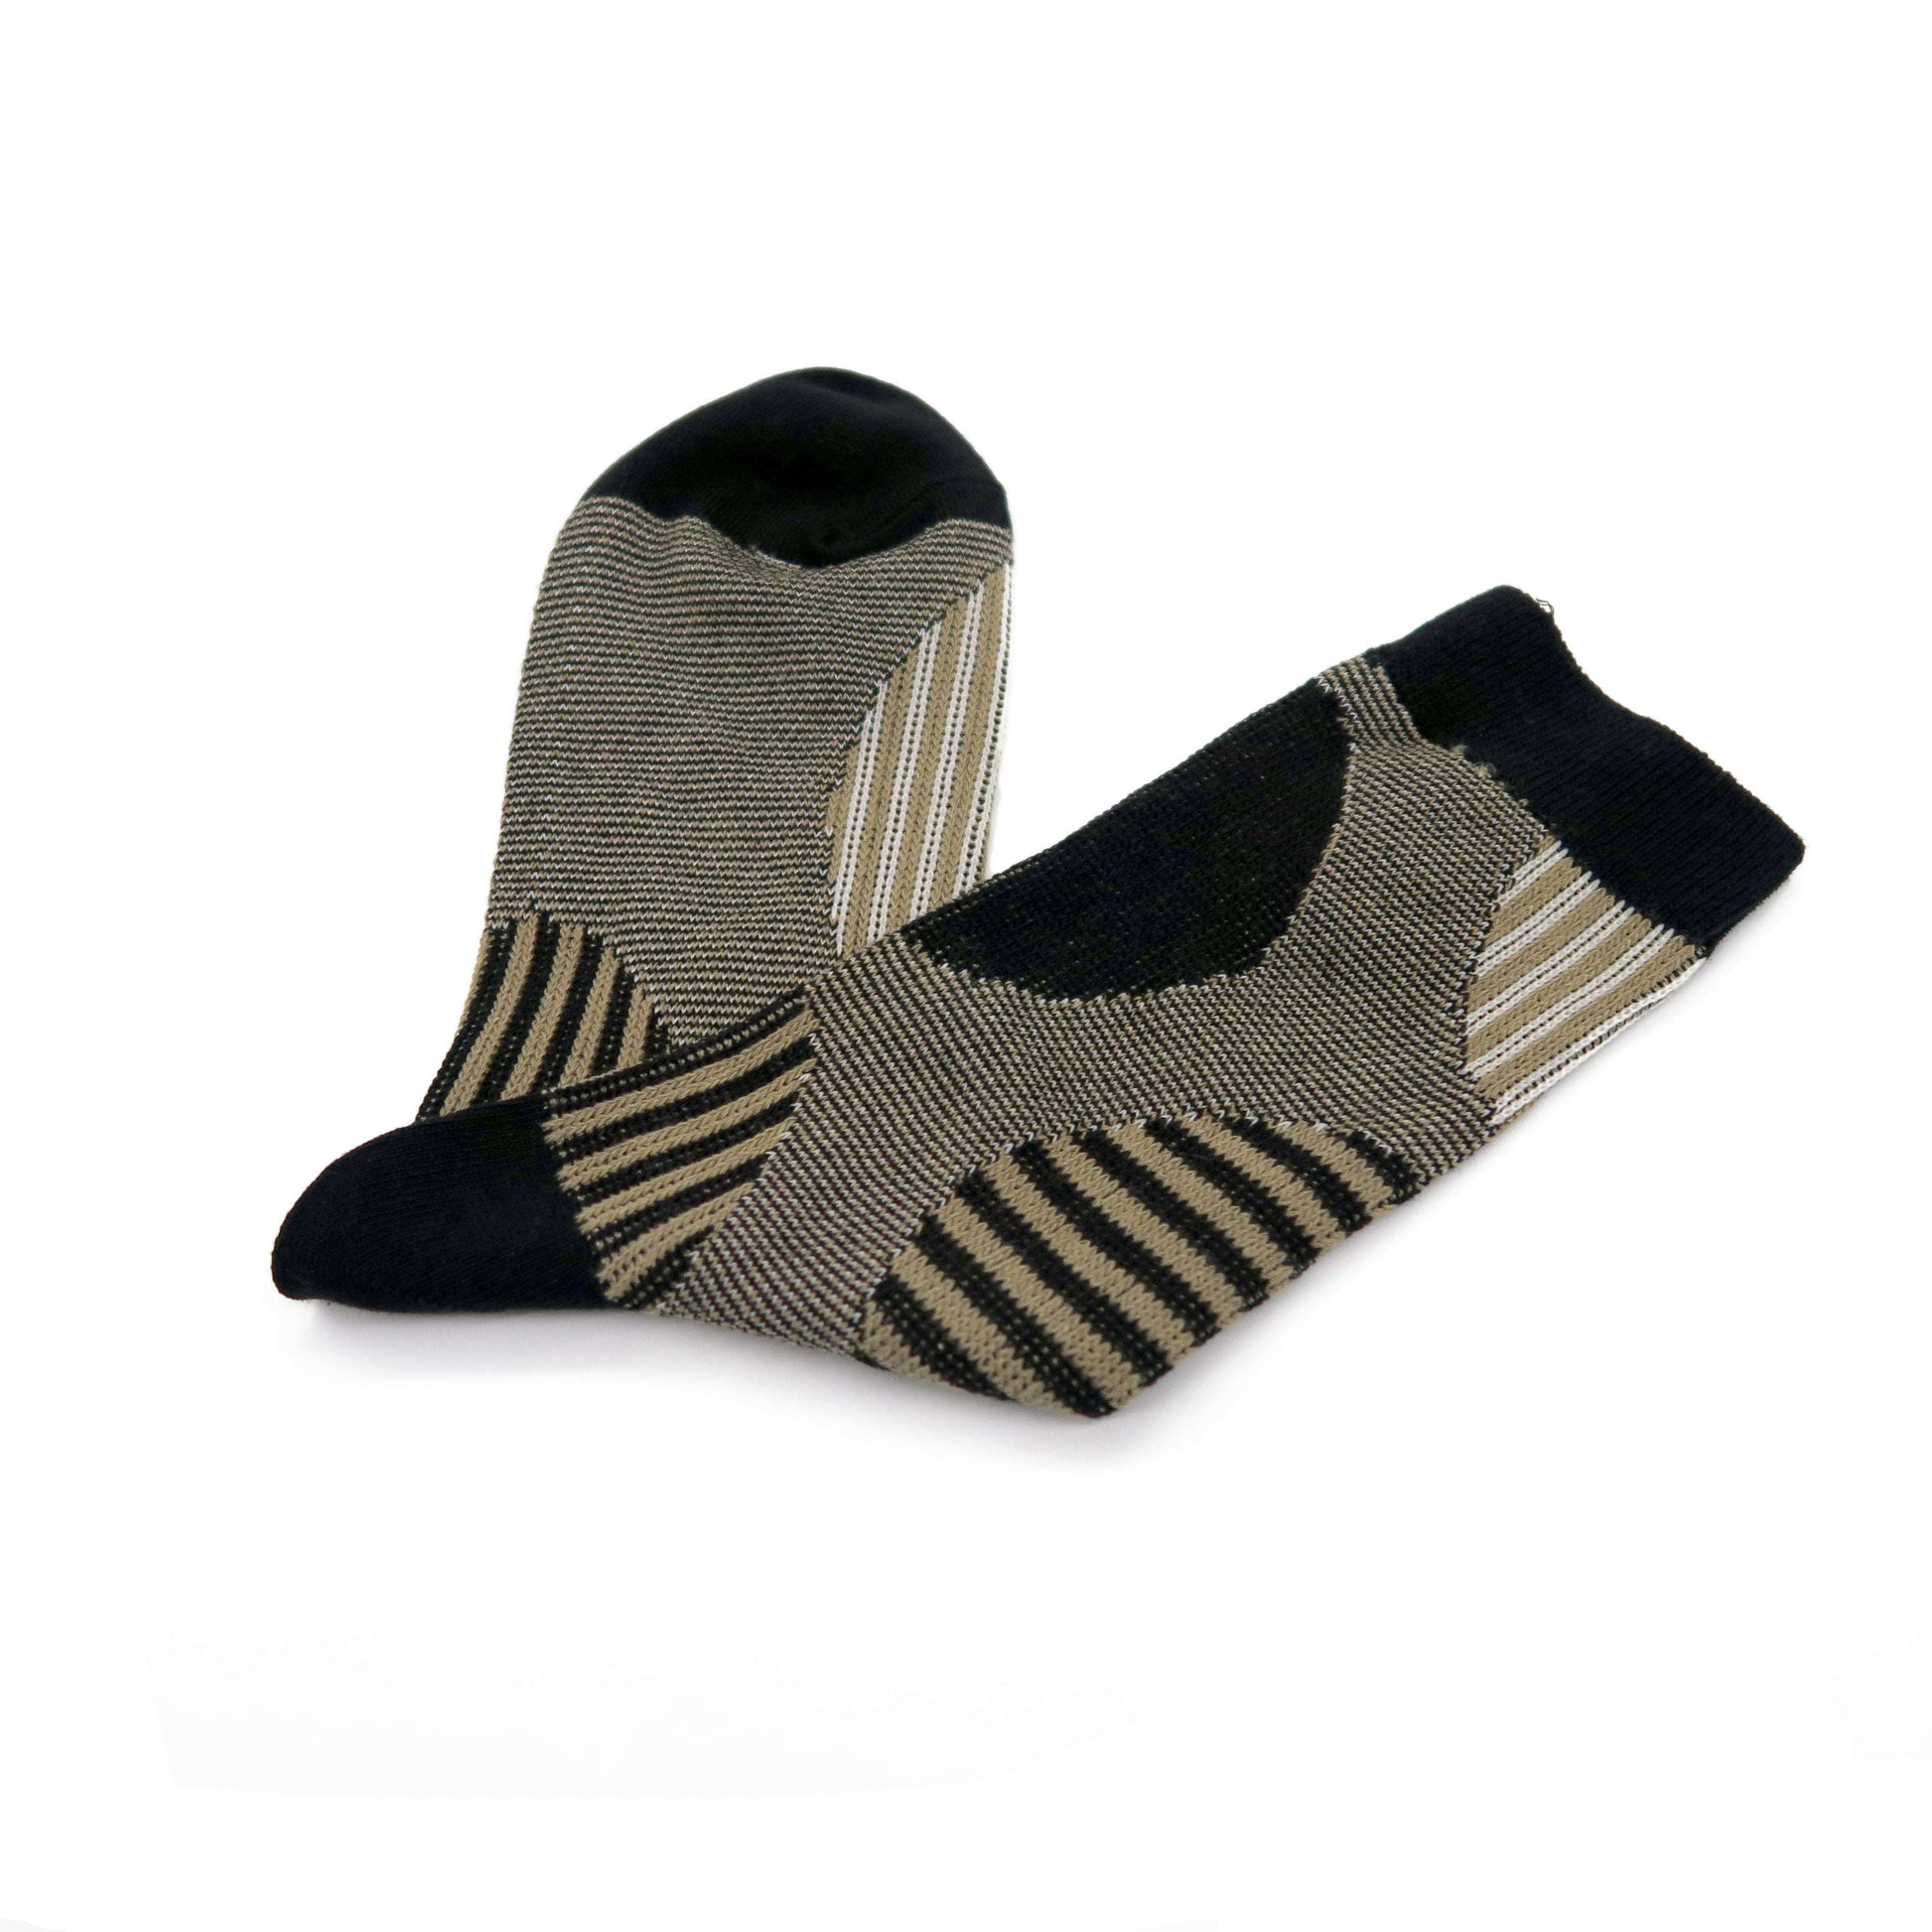 marui black socks - stripy big polka dots pattern